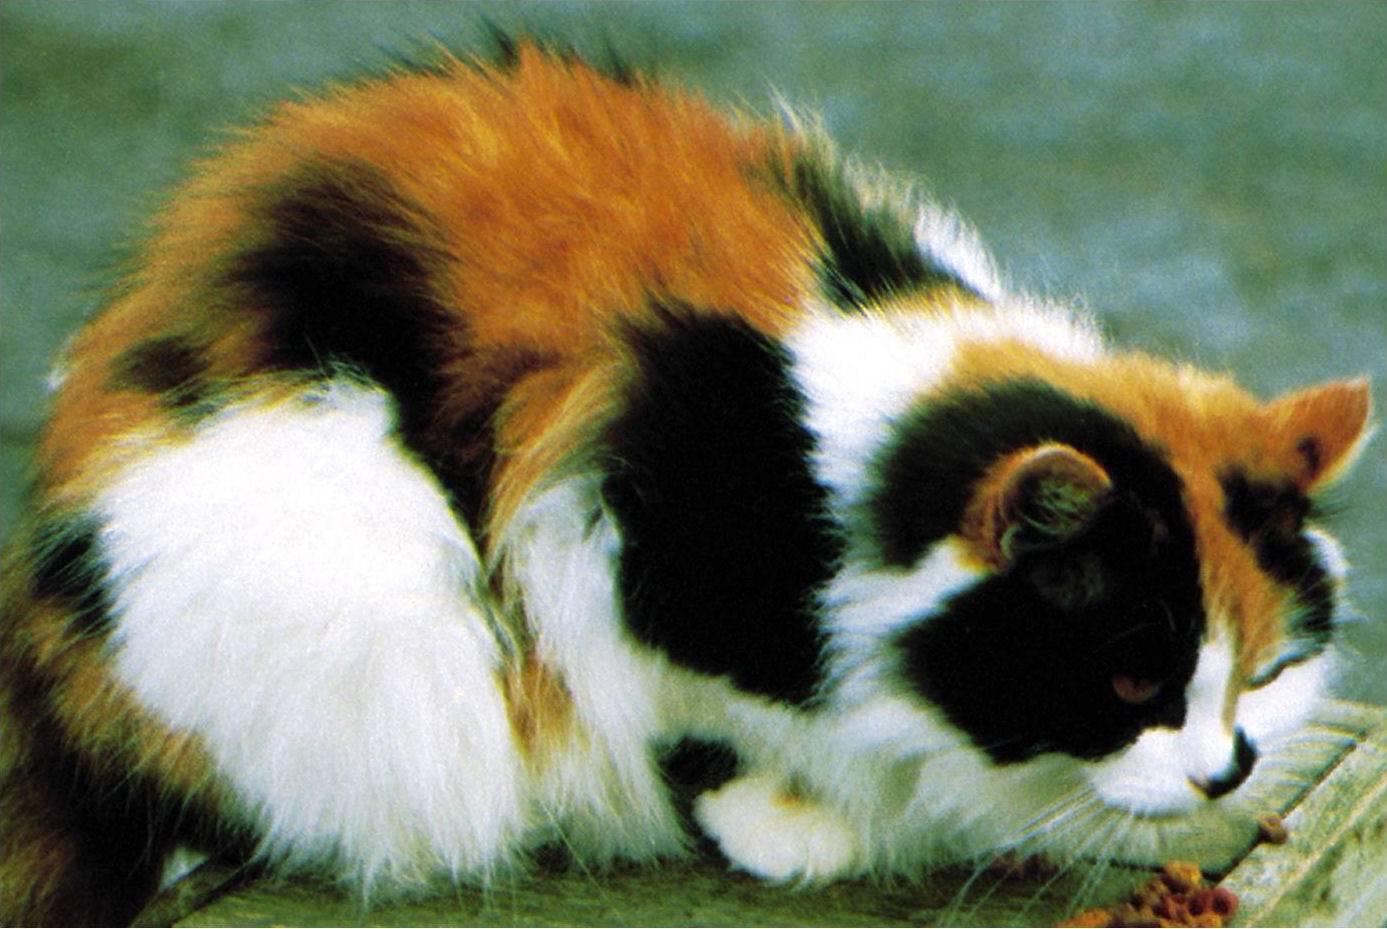 Пол трехцветного котенка. Порода Калико. Британская кошка трехцветная. Британская кошка трехцветная черепаховая. Черепаховая кошка Калико.